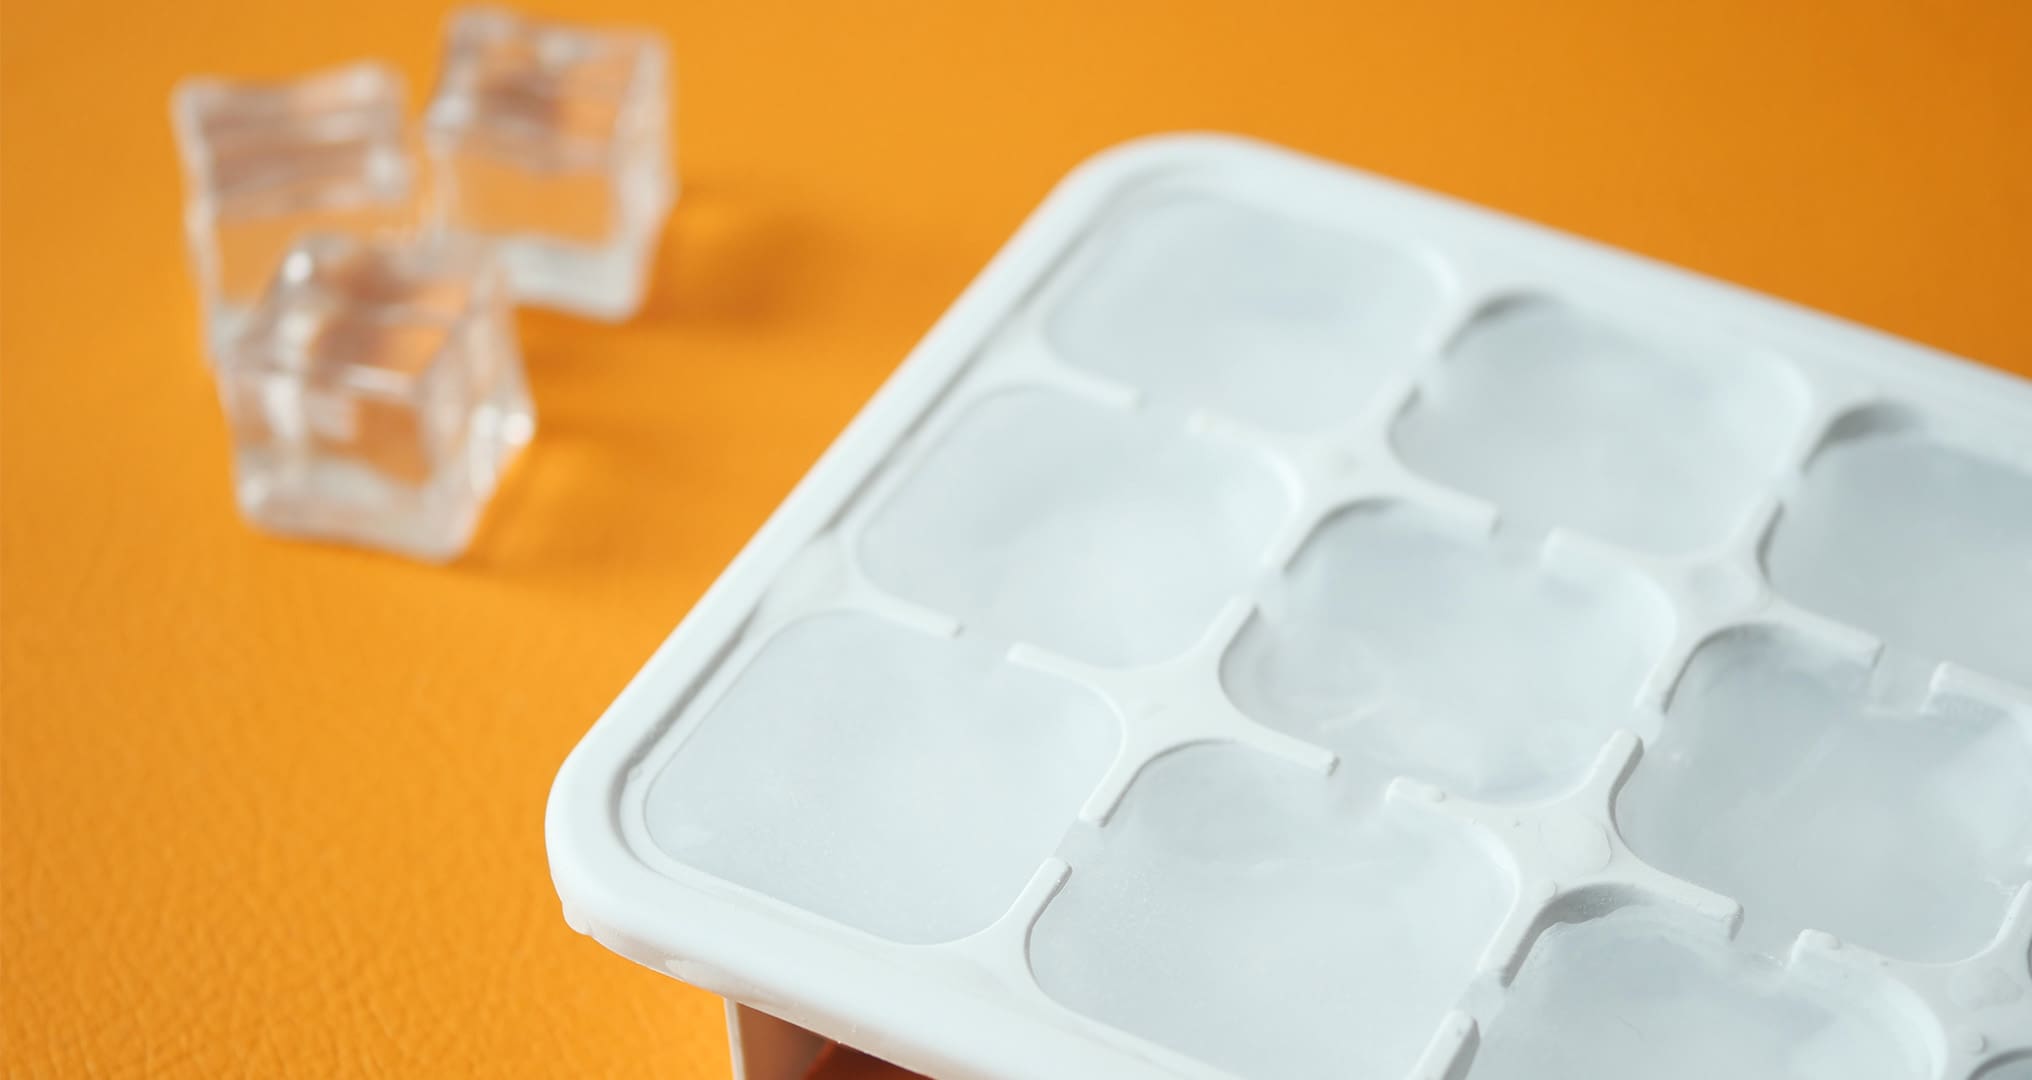 plastic ice tray